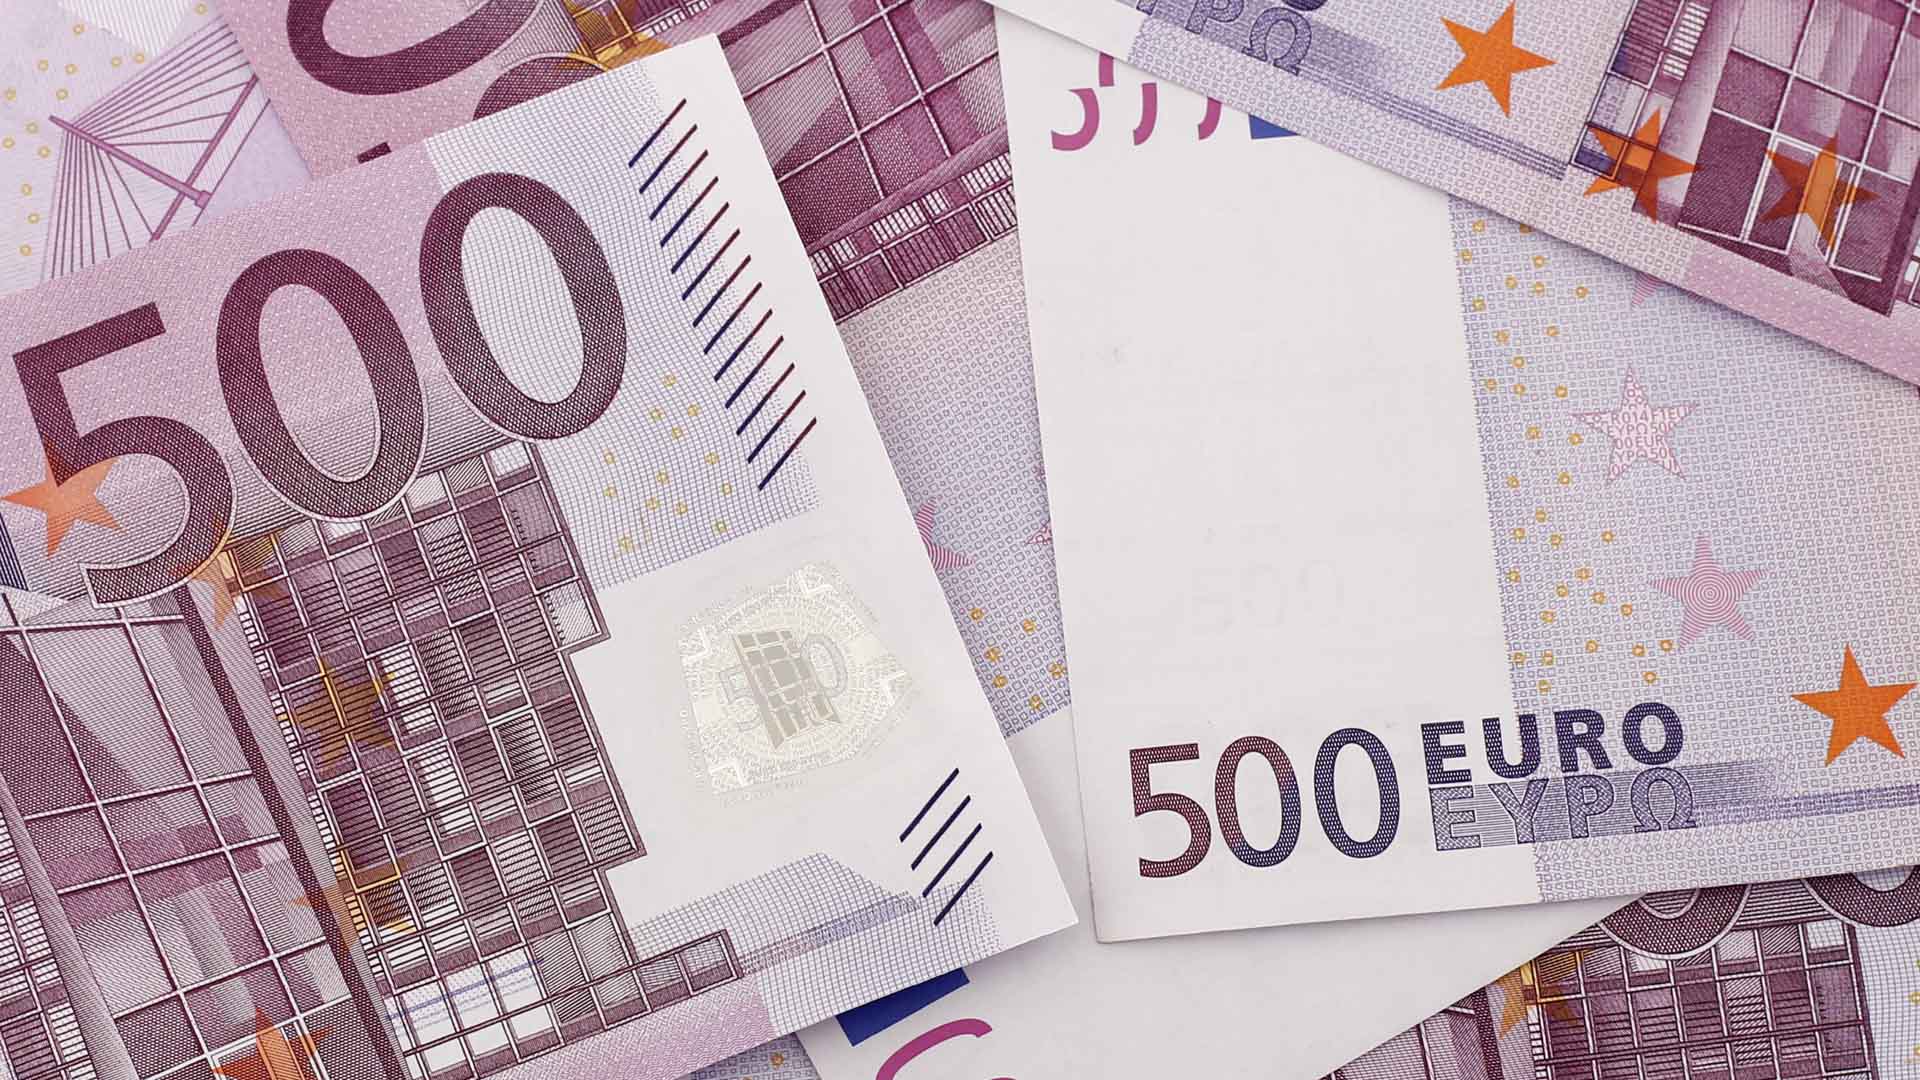 La mujer de 89 años había roto 37 billetes de 500 euros por temor a que entraran a robar en su casa